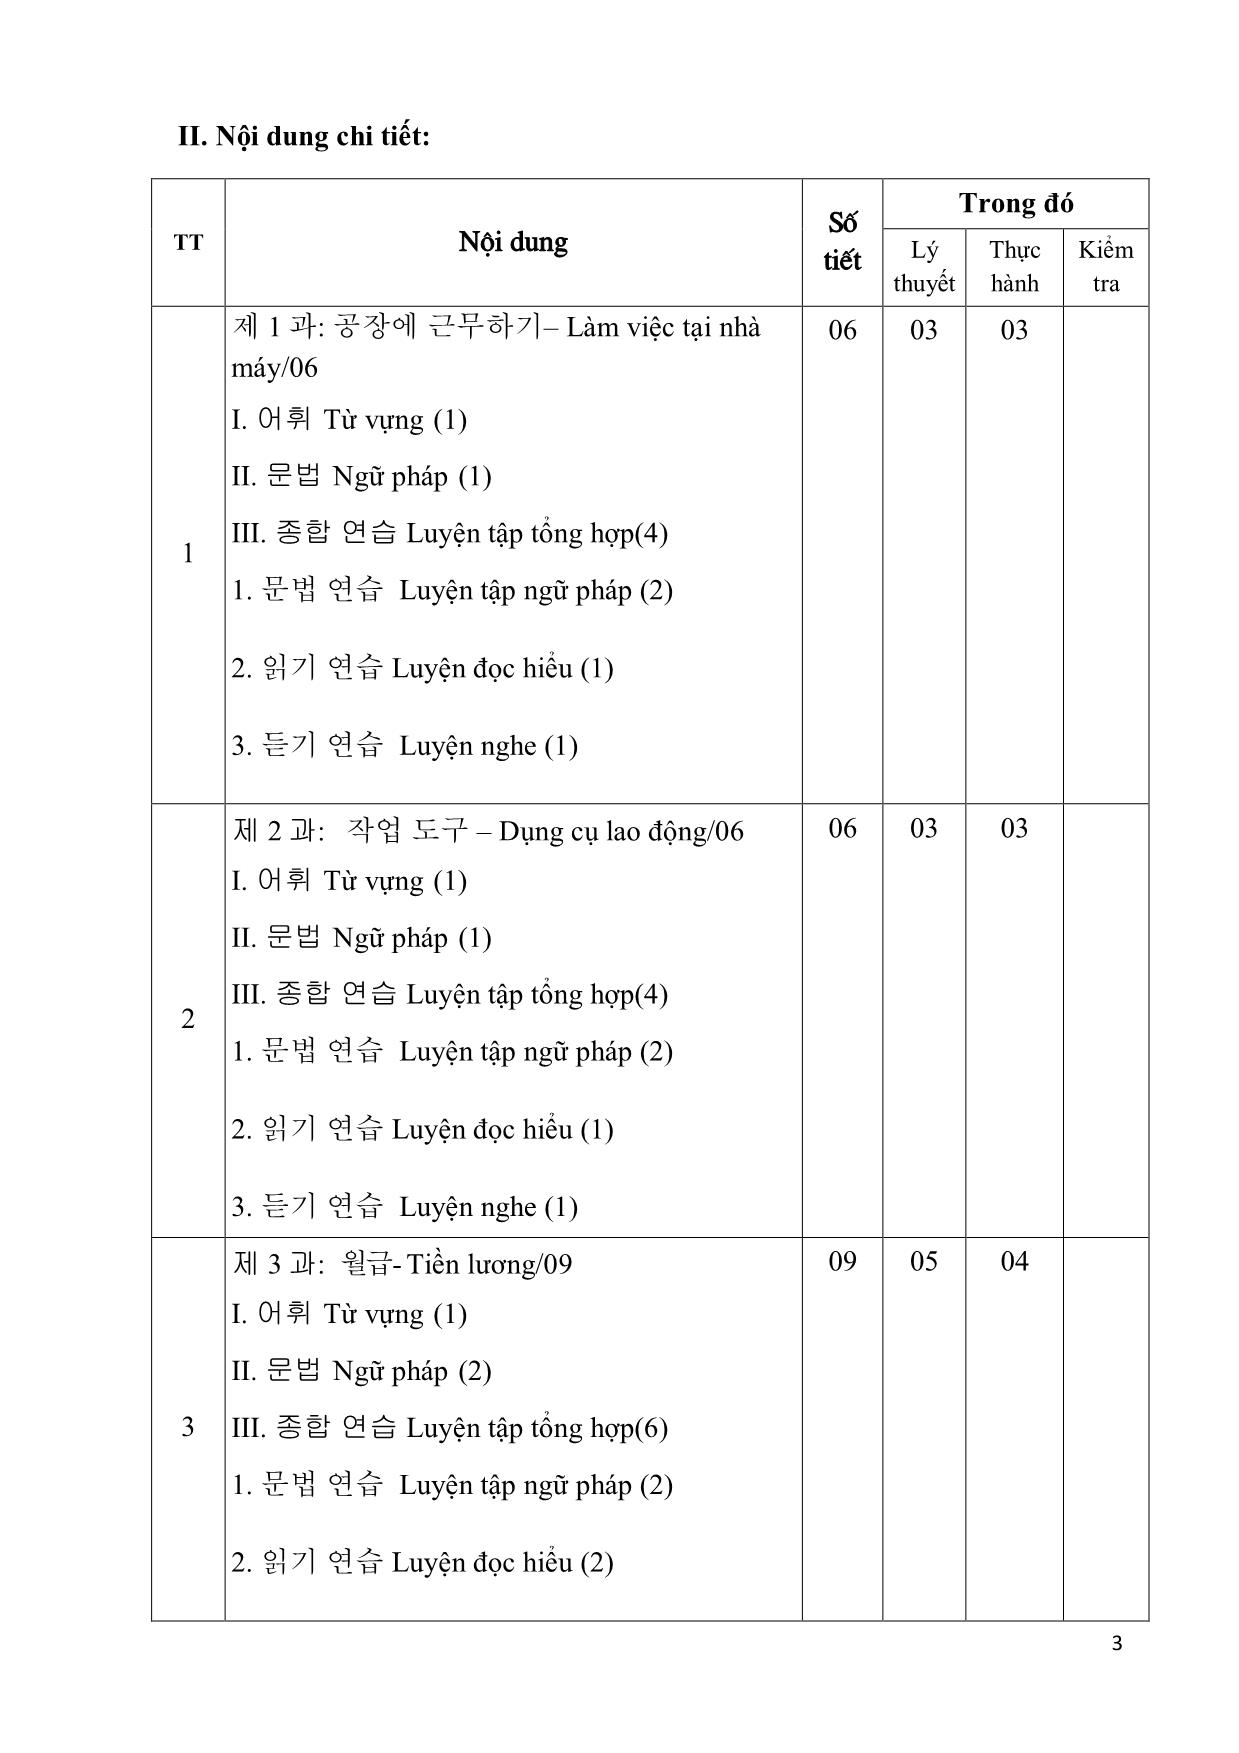 Giáo trình Chương trình tiếng Hàn dùng trong sản xuất chế tạo trang 3